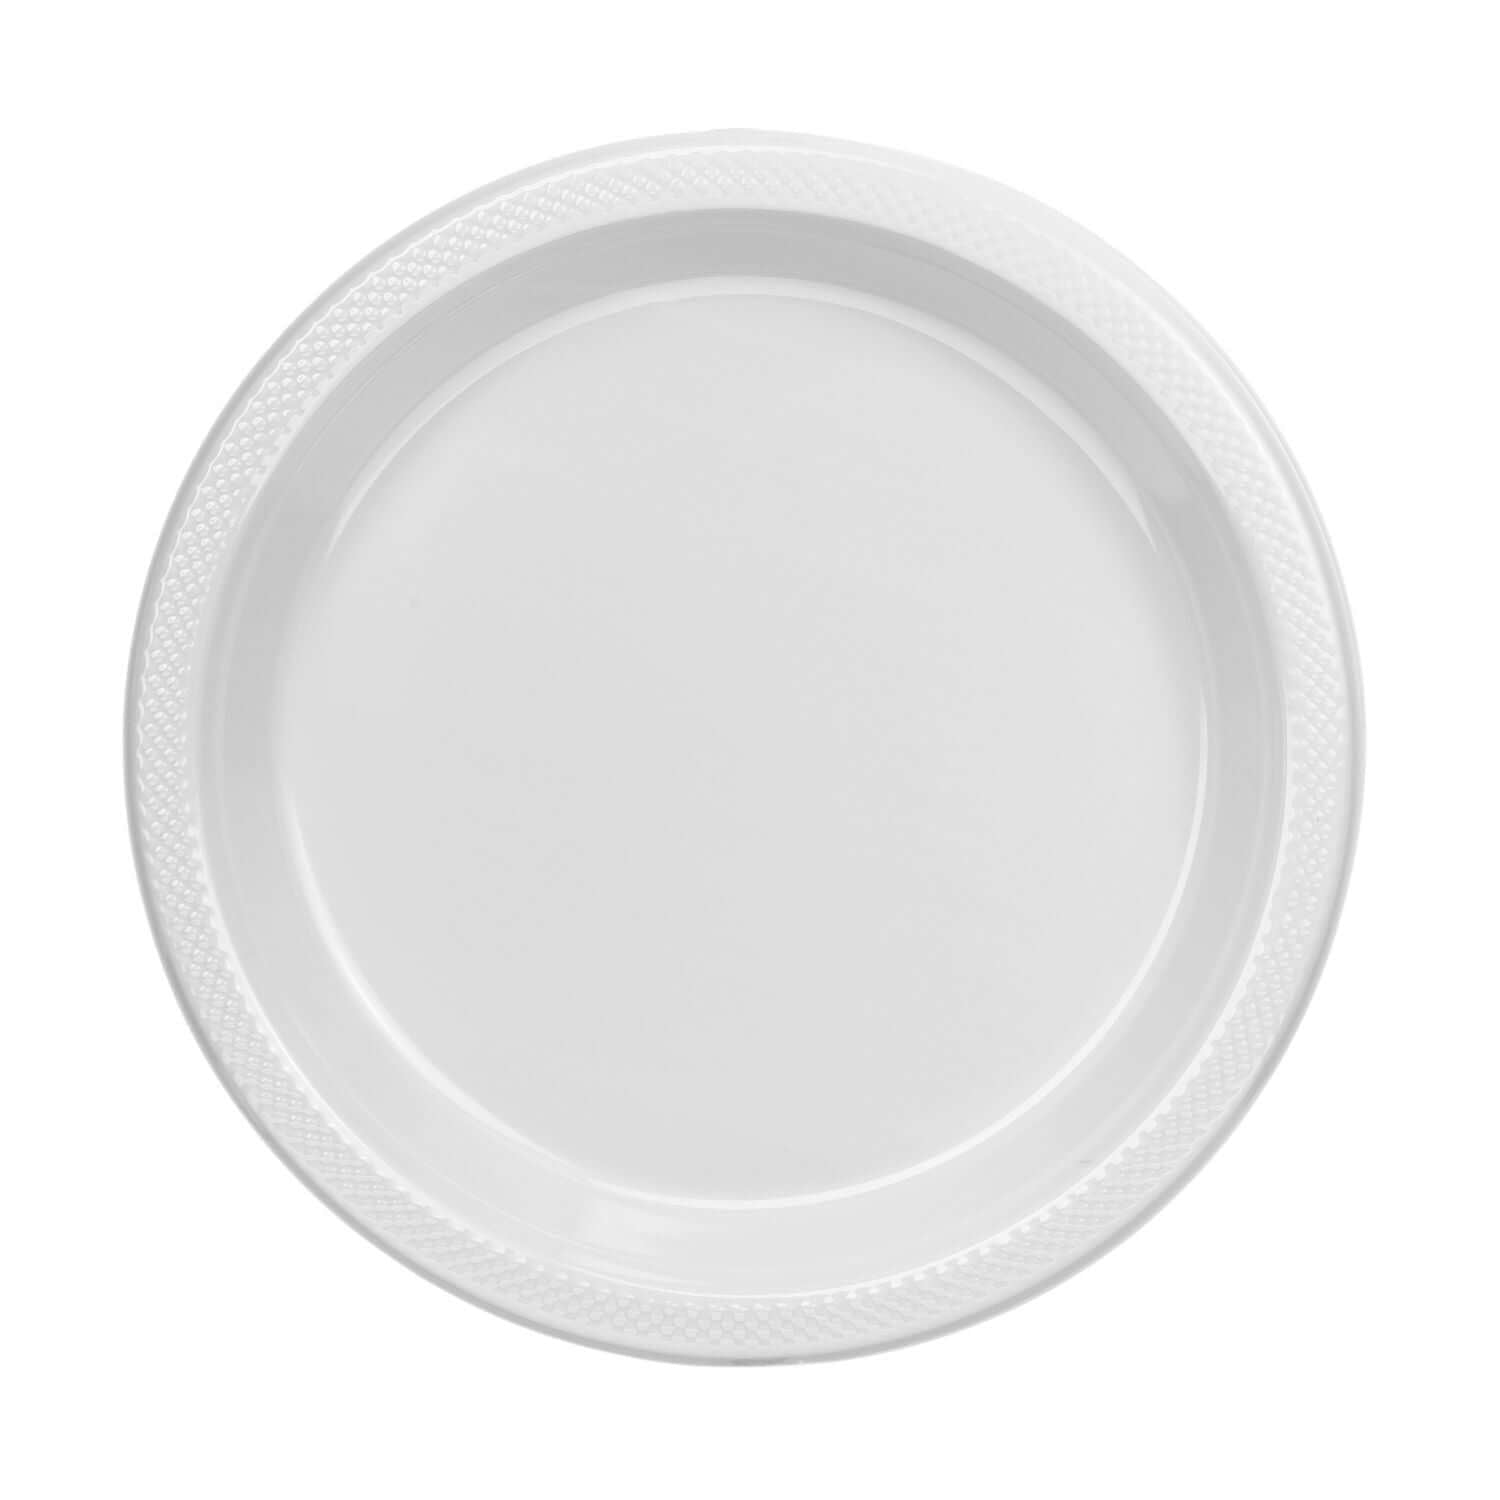 10" | White Plastic Plates | 600 Count - Yom Tov Settings